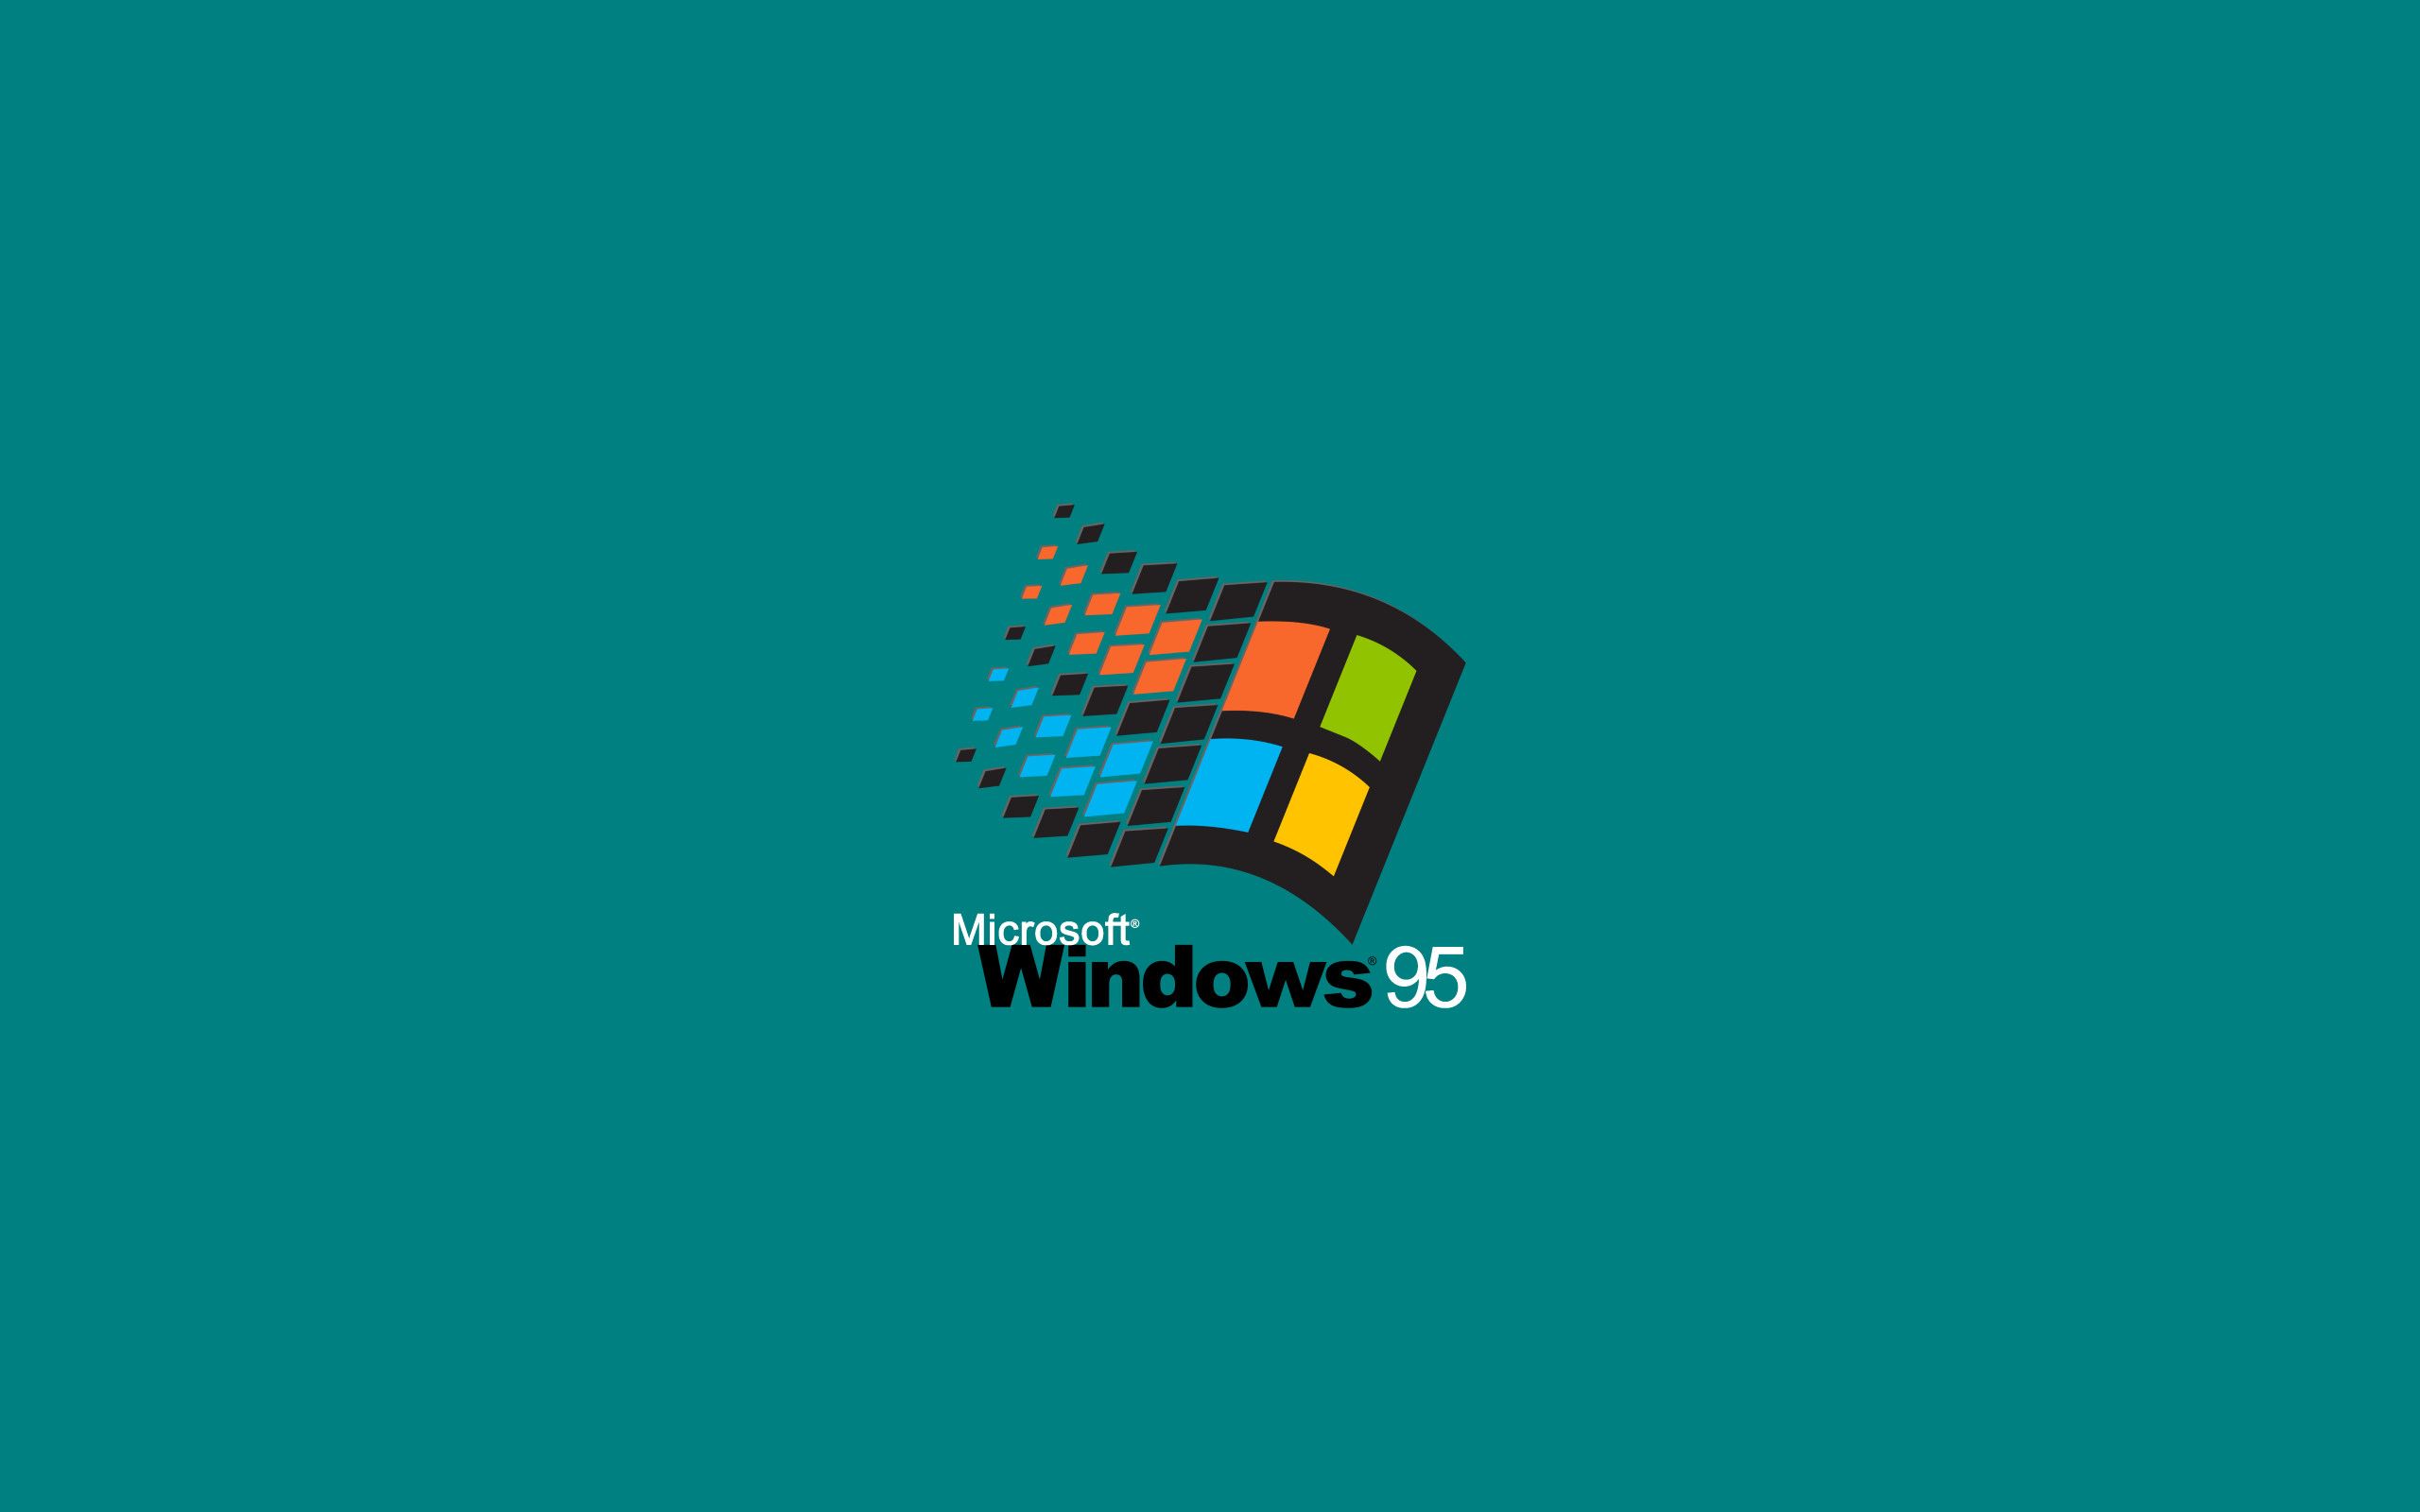 Windows 95 đã trở thành huyền thoại với những hình nền đầy sáng tạo và đặc biệt. Hãy xem bức ảnh liên quan để tận hưởng lại những phút giây thăng hoa và sự độc đáo của những hình nền này.